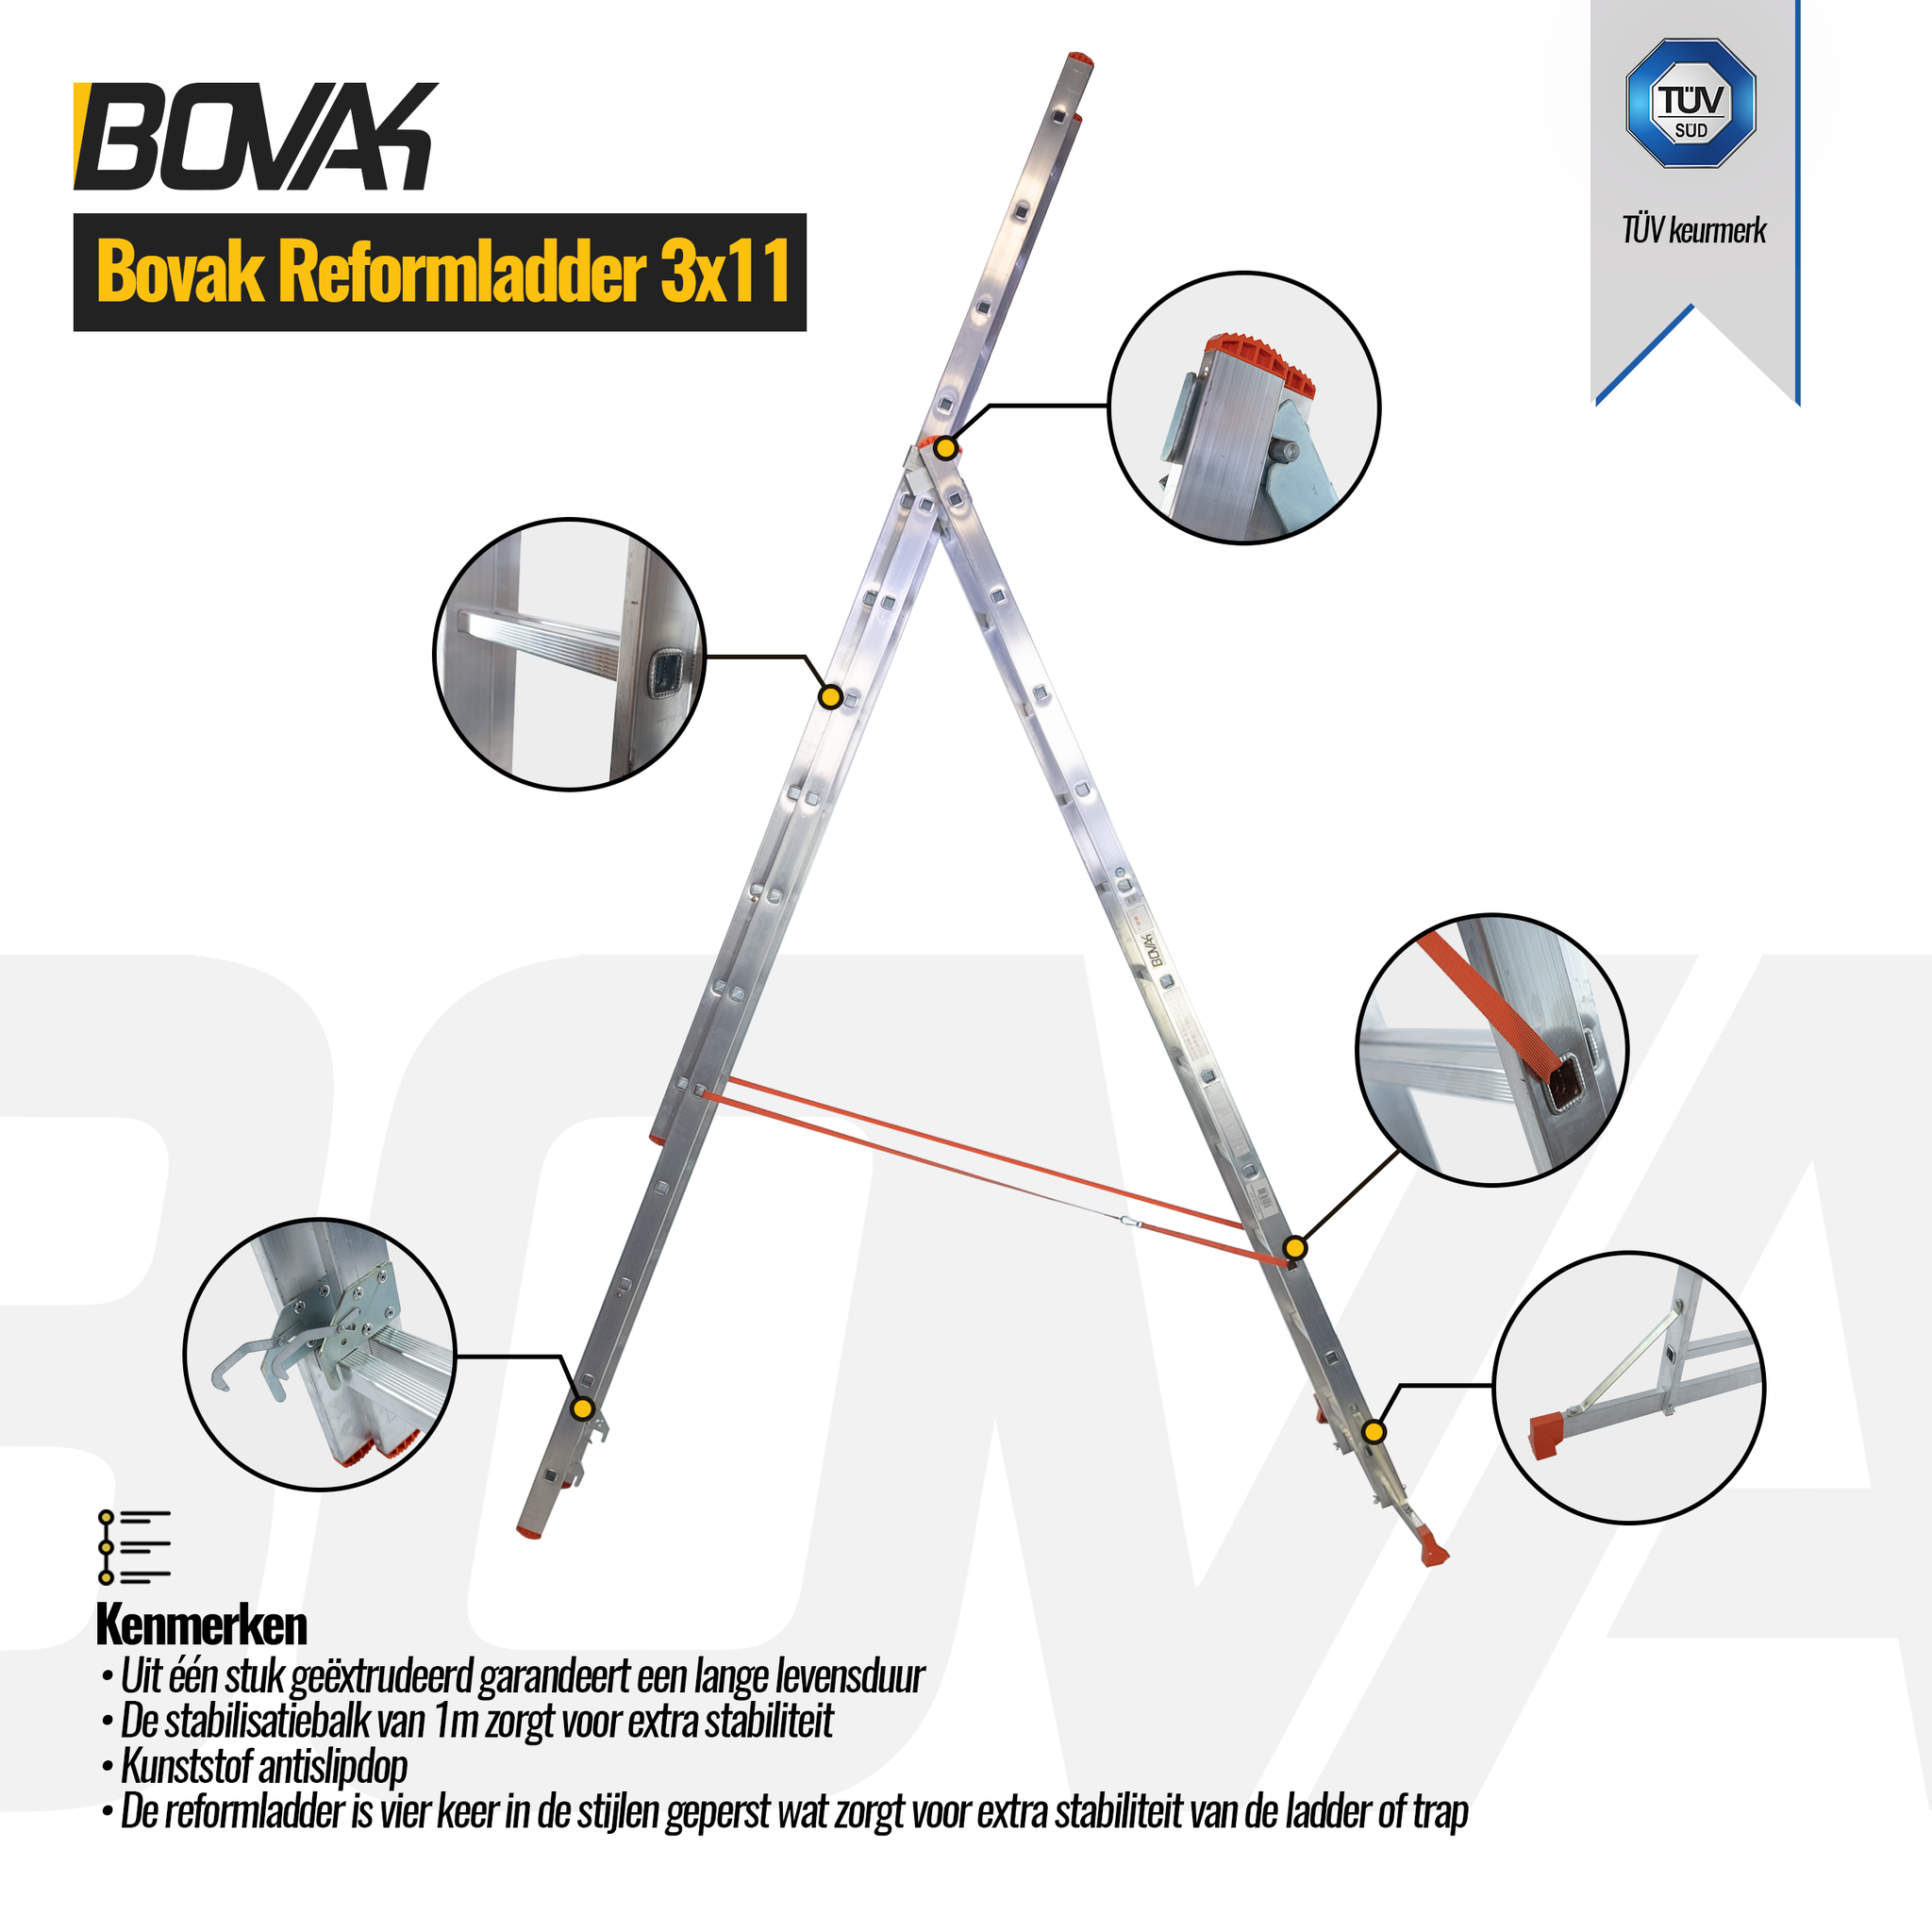 Voorwaarde Blind aangenaam Bovak Multifunctionele Reformladder 3x11 treden hoogte 7,33 meter TÜV  keurmerk - Steemastore